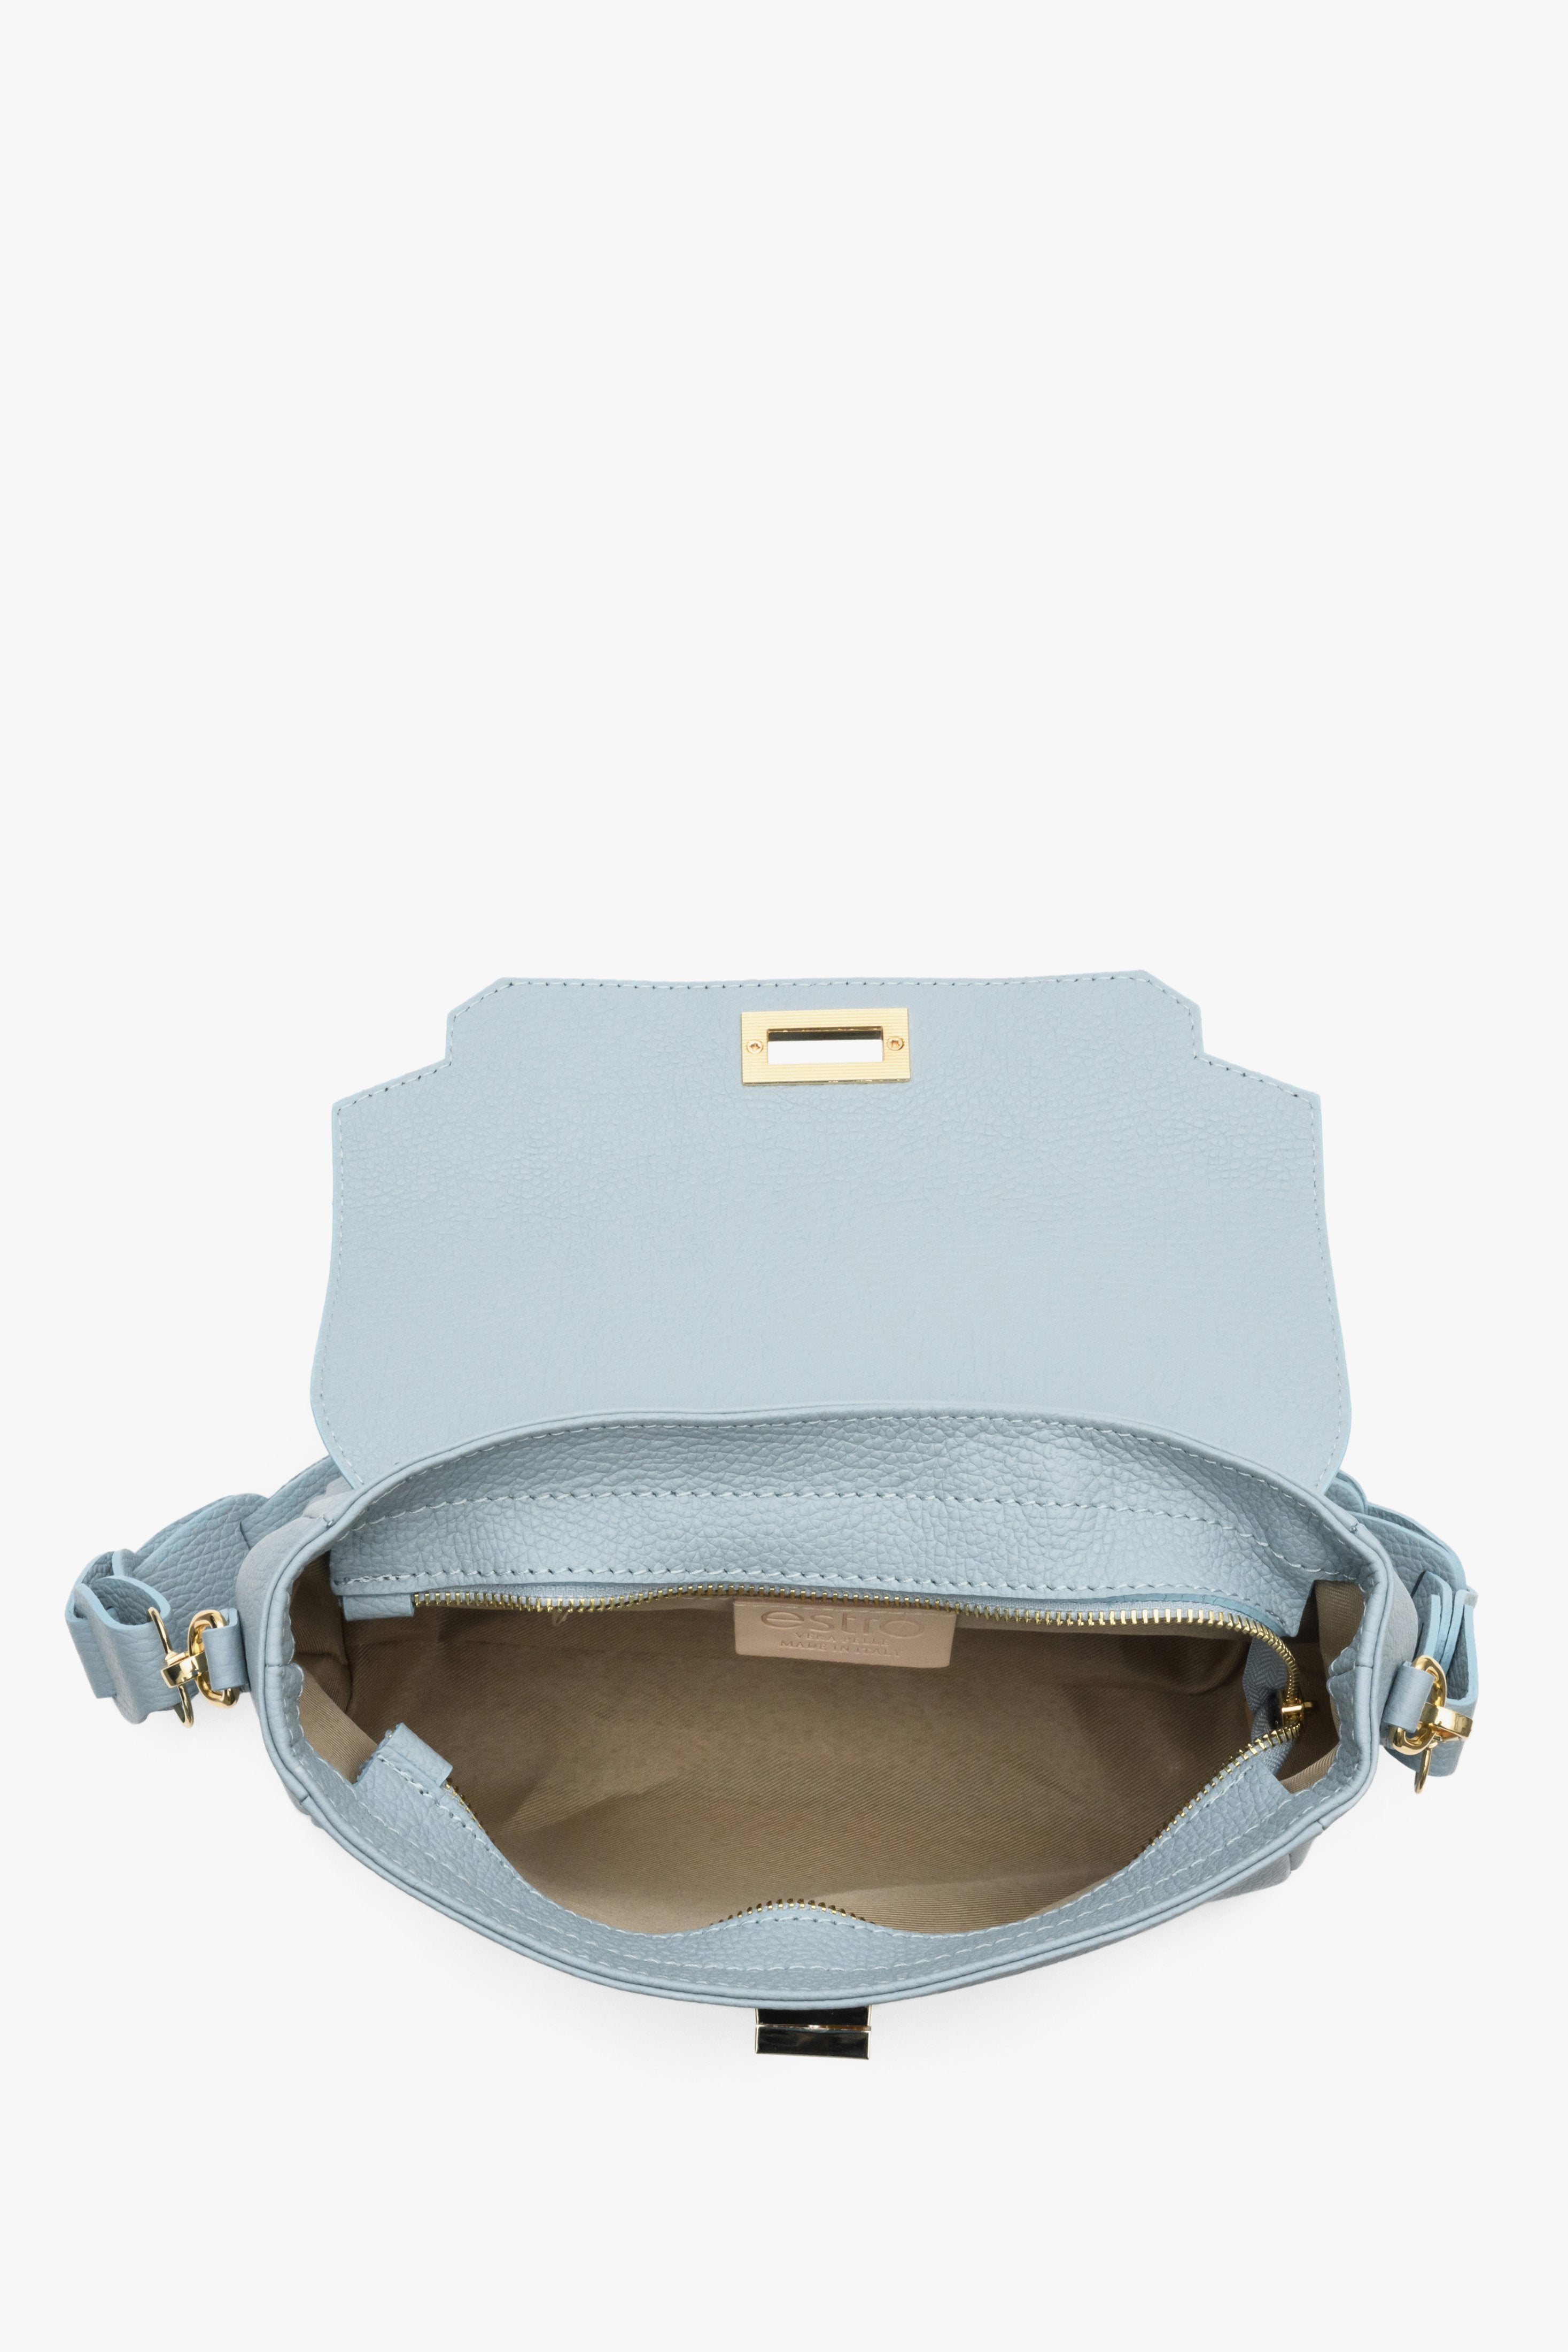 Niebieska torebka damska na ramię ze skóry naturalnej produkcji włoskiej marki Estro - prezentacja wnętrza modelu.